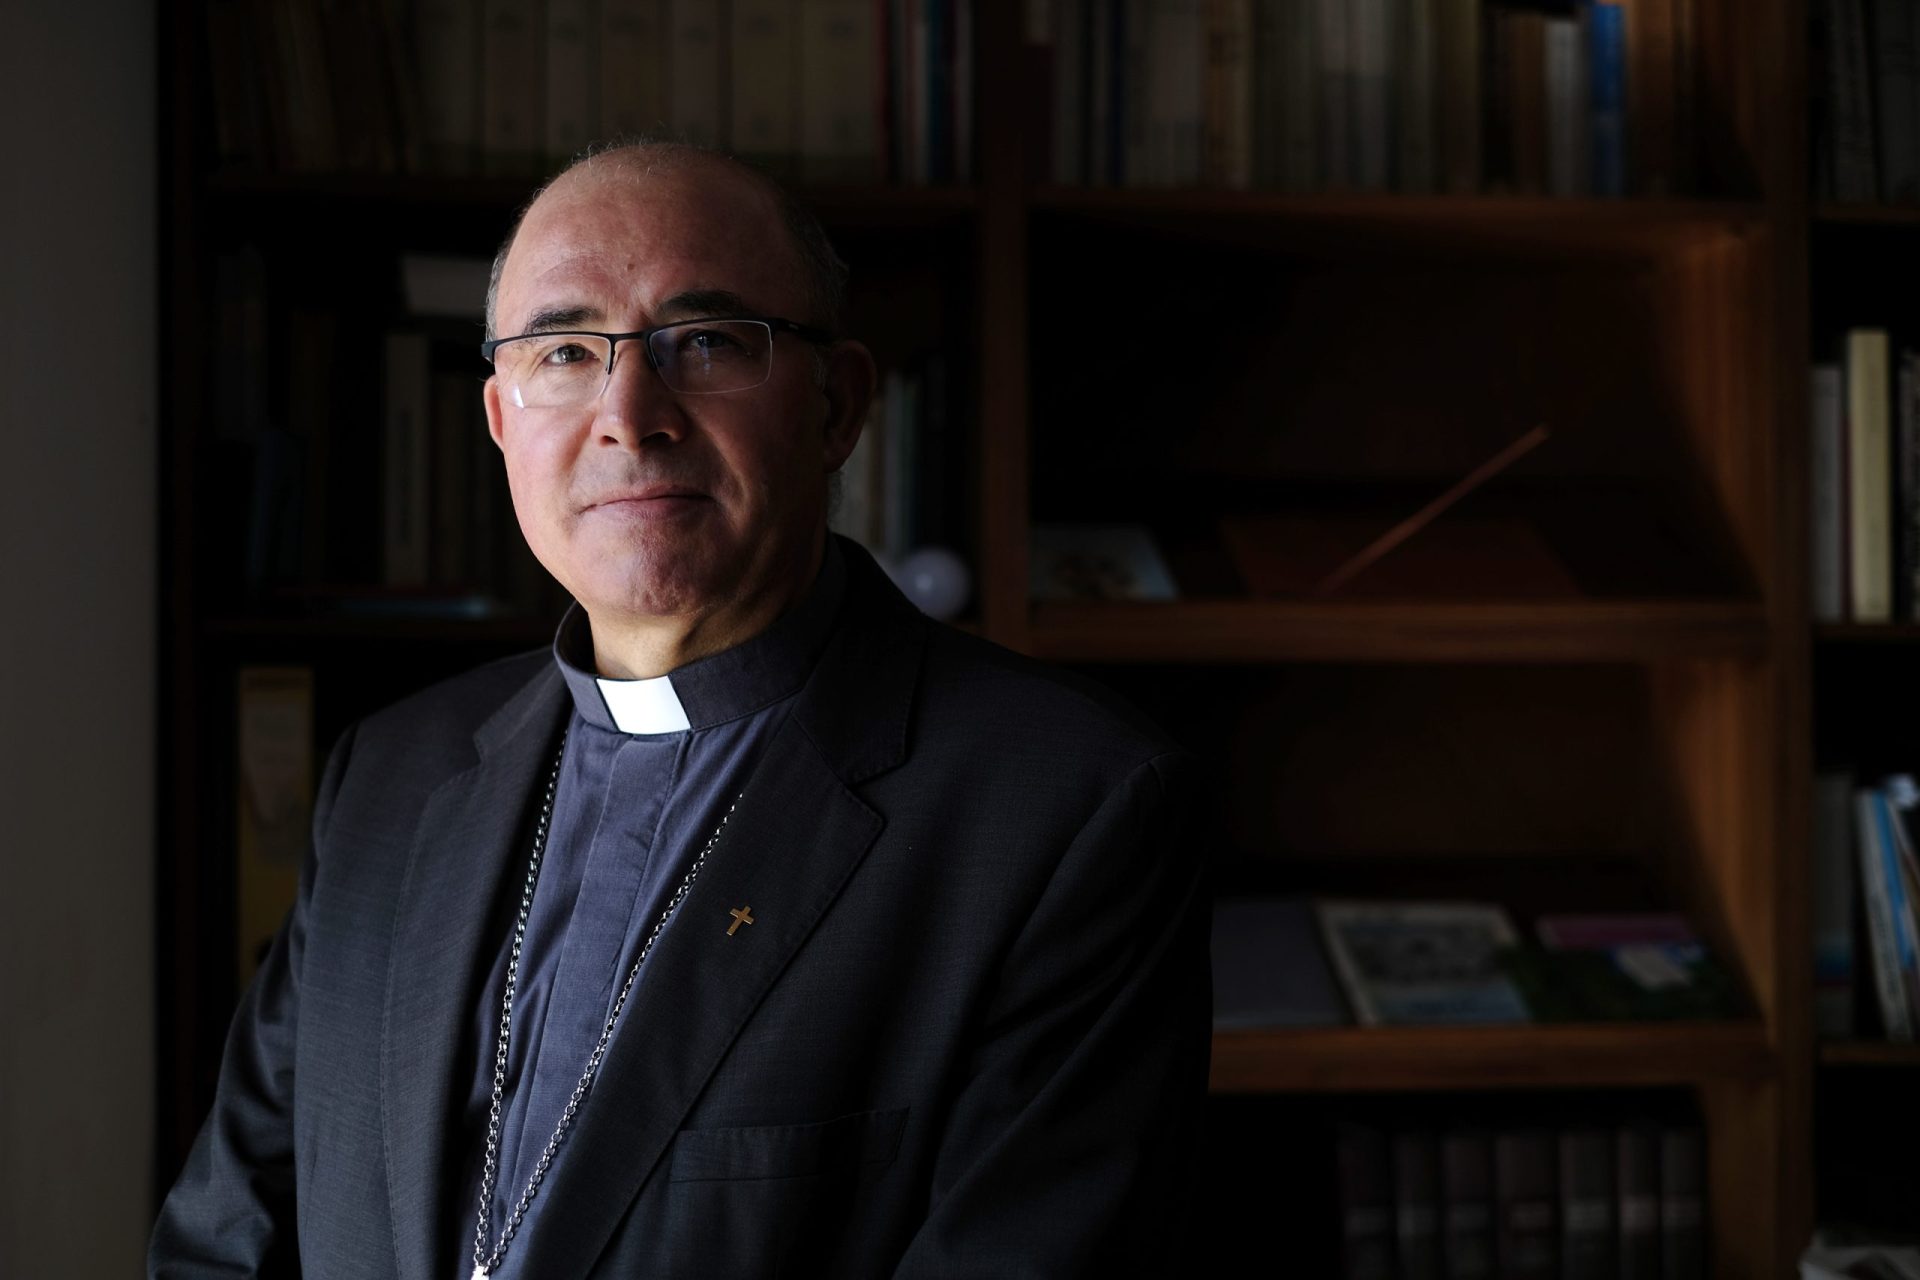 Bispo das FA: “A Igreja, as Forças Armadas e de Segurança foram decisivas”